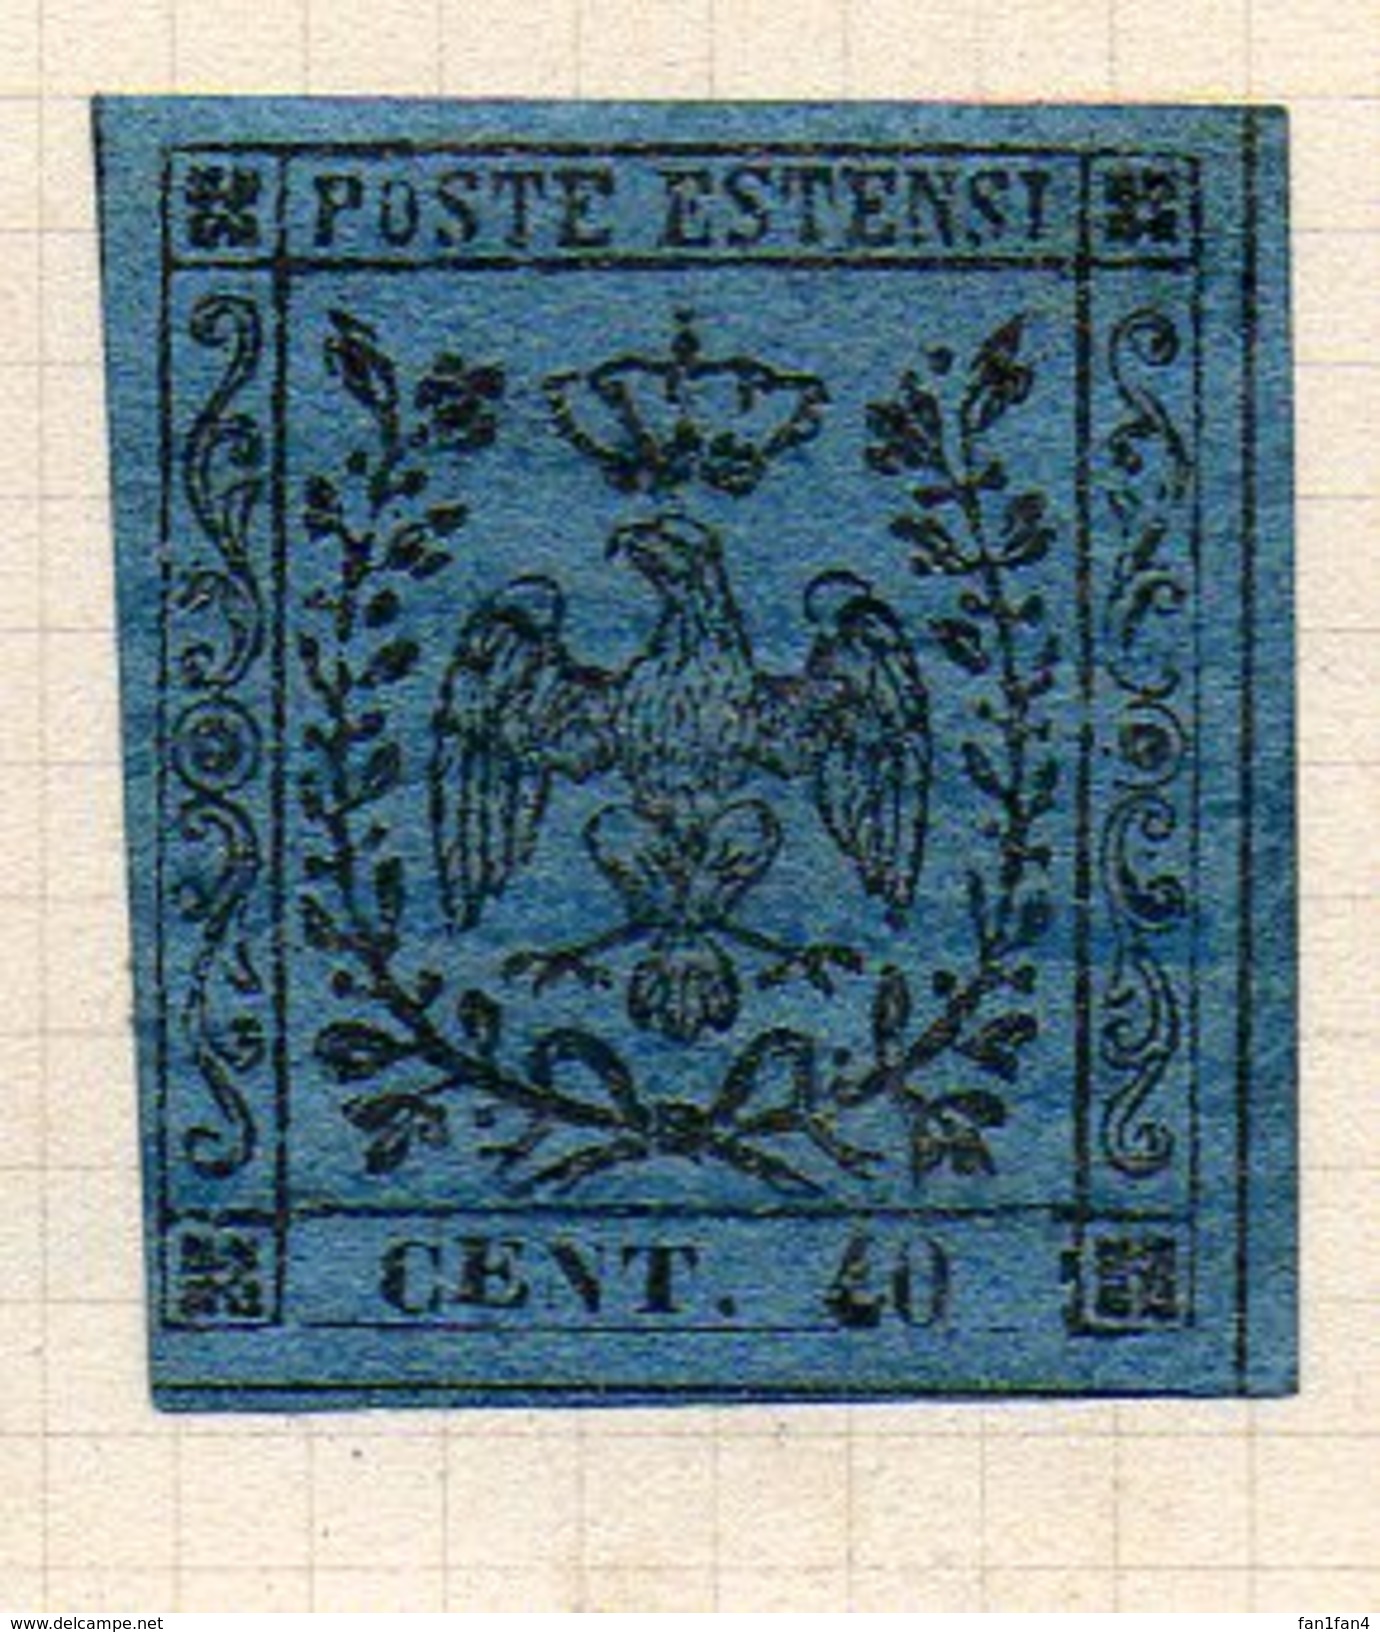 ITALIE (Anciens états) - 1852 - MODENE (Duché) - N° 5 - 40 C. Bleu Foncé - (sans Point Après Le Chiffre) - Modène